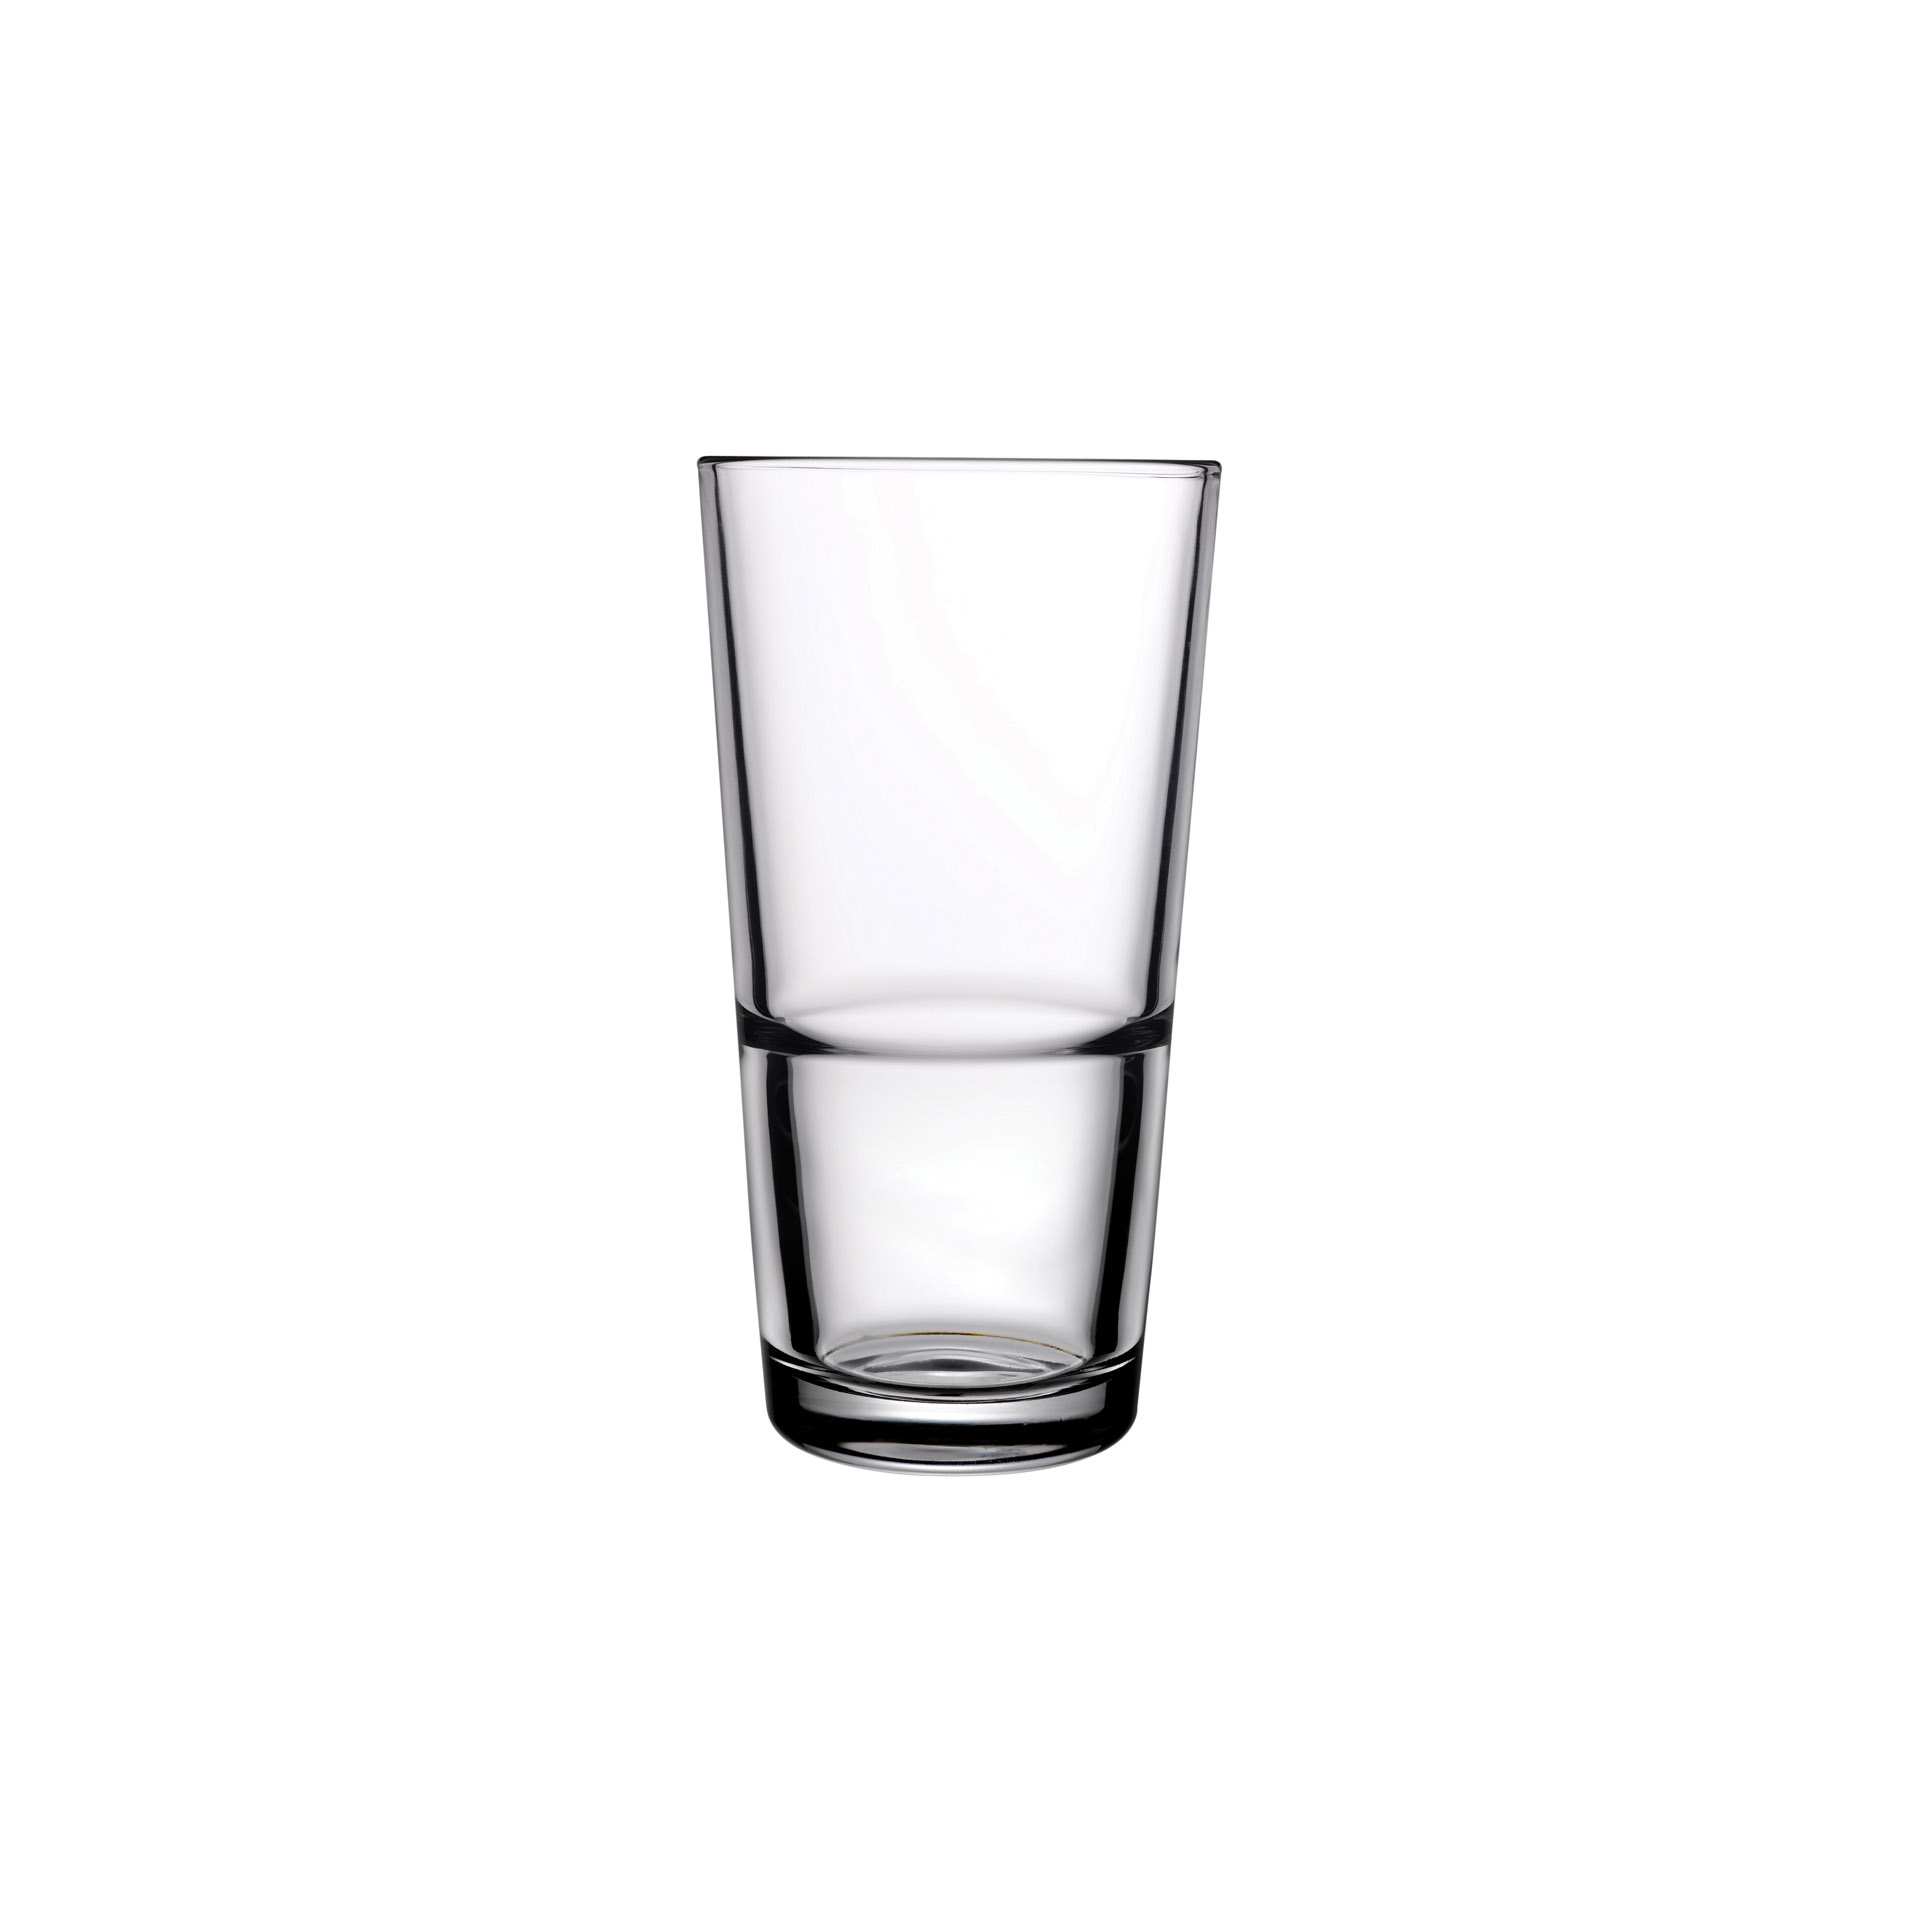 Longdrink-Glas - Set á 12 Stück - Serie Grande-S - Höhe 16,0 cm - Ø oben / unten 8,6 / 6,1 cm - Inhalt 0,48 l - Glas - 52080-A